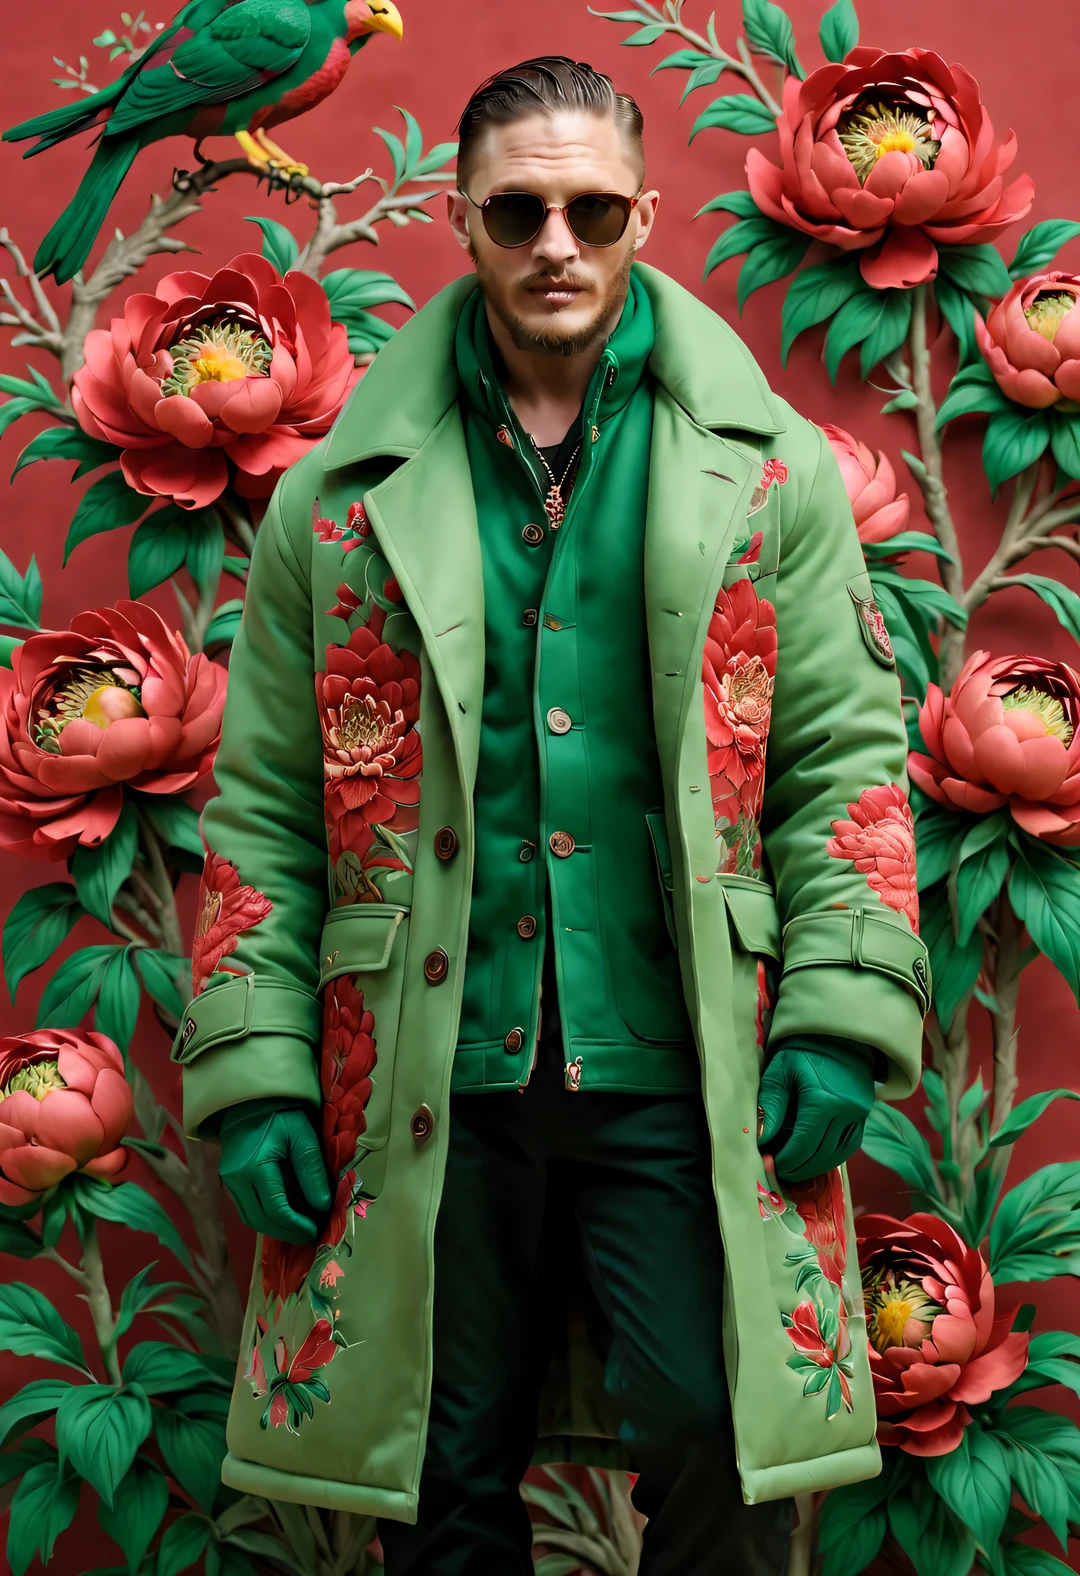 ผู้ชายหน้าหนาว&#39;แฟชั่นโชว์ของ, (ทั้งร่างกาย),
(Men's winter เกินsized cotton เสื้อโค้ท design: 1.0), (Tall and handsome male model Tom Hardy wears a cotton เสื้อโค้ท made of thick red and green peony fabric: 1.34), 苏绣大ดอกโบตั๋นสีแดงและสีเขียว飞鸟, ธีมของลวดลายที่ผสมผสานกัน, ด้วยปกขนสัตว์สีน้ำตาลและลวดลายที่สลับซับซ้อน, การตีความสมัยใหม่ของดอกโบตั๋นทิเบตและโทเท็มนก, เรียนรู้จากมรดกทางวัฒนธรรมอันมั่งคั่งและงานฝีมืออันประณีตของภาคตะวันออกเฉียงเหนือ, โดยตีความเสื้อผ้าแบบดั้งเดิมให้มีเสน่ห์แบบสมัยใหม่ใหม่,
Parka snow เสื้อโค้ท, (เกิน) เสื้อโค้ท, เสื้อกันหนาว, ผ้าพันคอฤดูหนาว ผ้าพันคอที่อบอุ่น, ถุงมือ ถุงมือ, เข็มขัด, รองเท้าบูท, แว่นกันแดด, Wearing a thick cotton เสื้อโค้ท，ดอกโบตั๋นสีแดงและสีเขียว,
พื้นหลังเบลอ, เหมือนหนังเลย, พร้อมรายละเอียดที่ชัดเจนเป็นพิเศษ, แสงเน้นเสียง, การส่องสว่างระดับโลก, รายละเอียดที่ซับซ้อน, ความสมจริง, ใกล้ชิด, กล้องถ่ายภาพยนตร์,